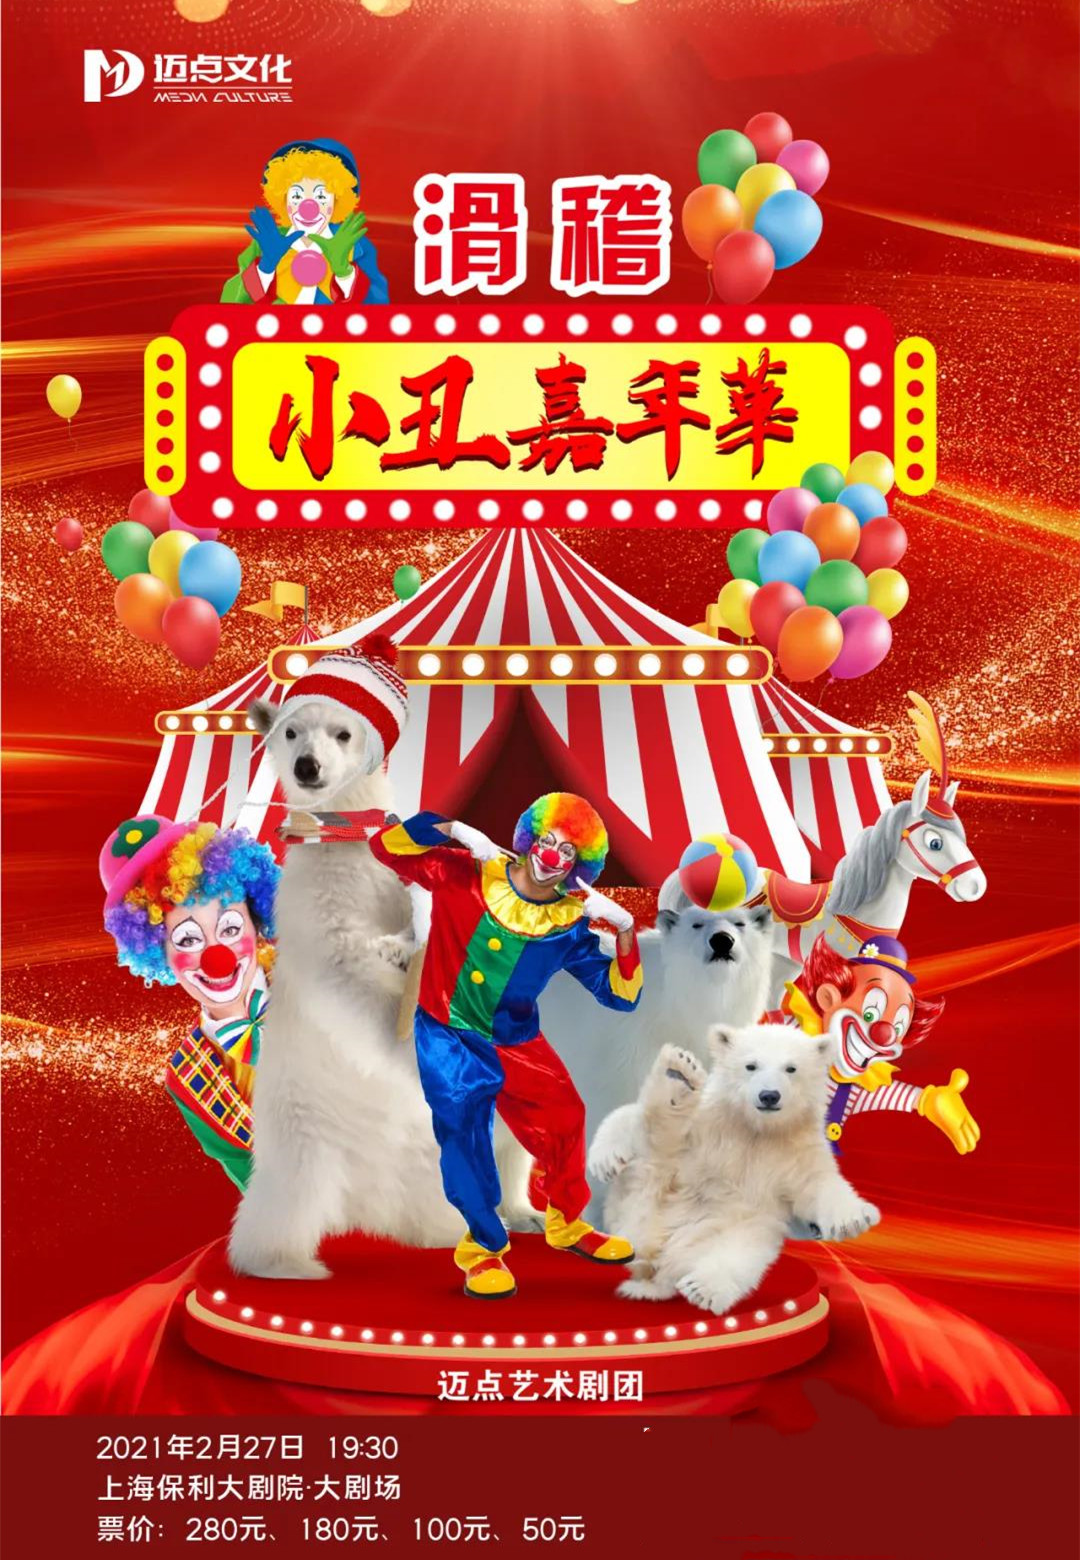 2021大型杂技互动儿童剧《滑稽小丑嘉年华》-上海站